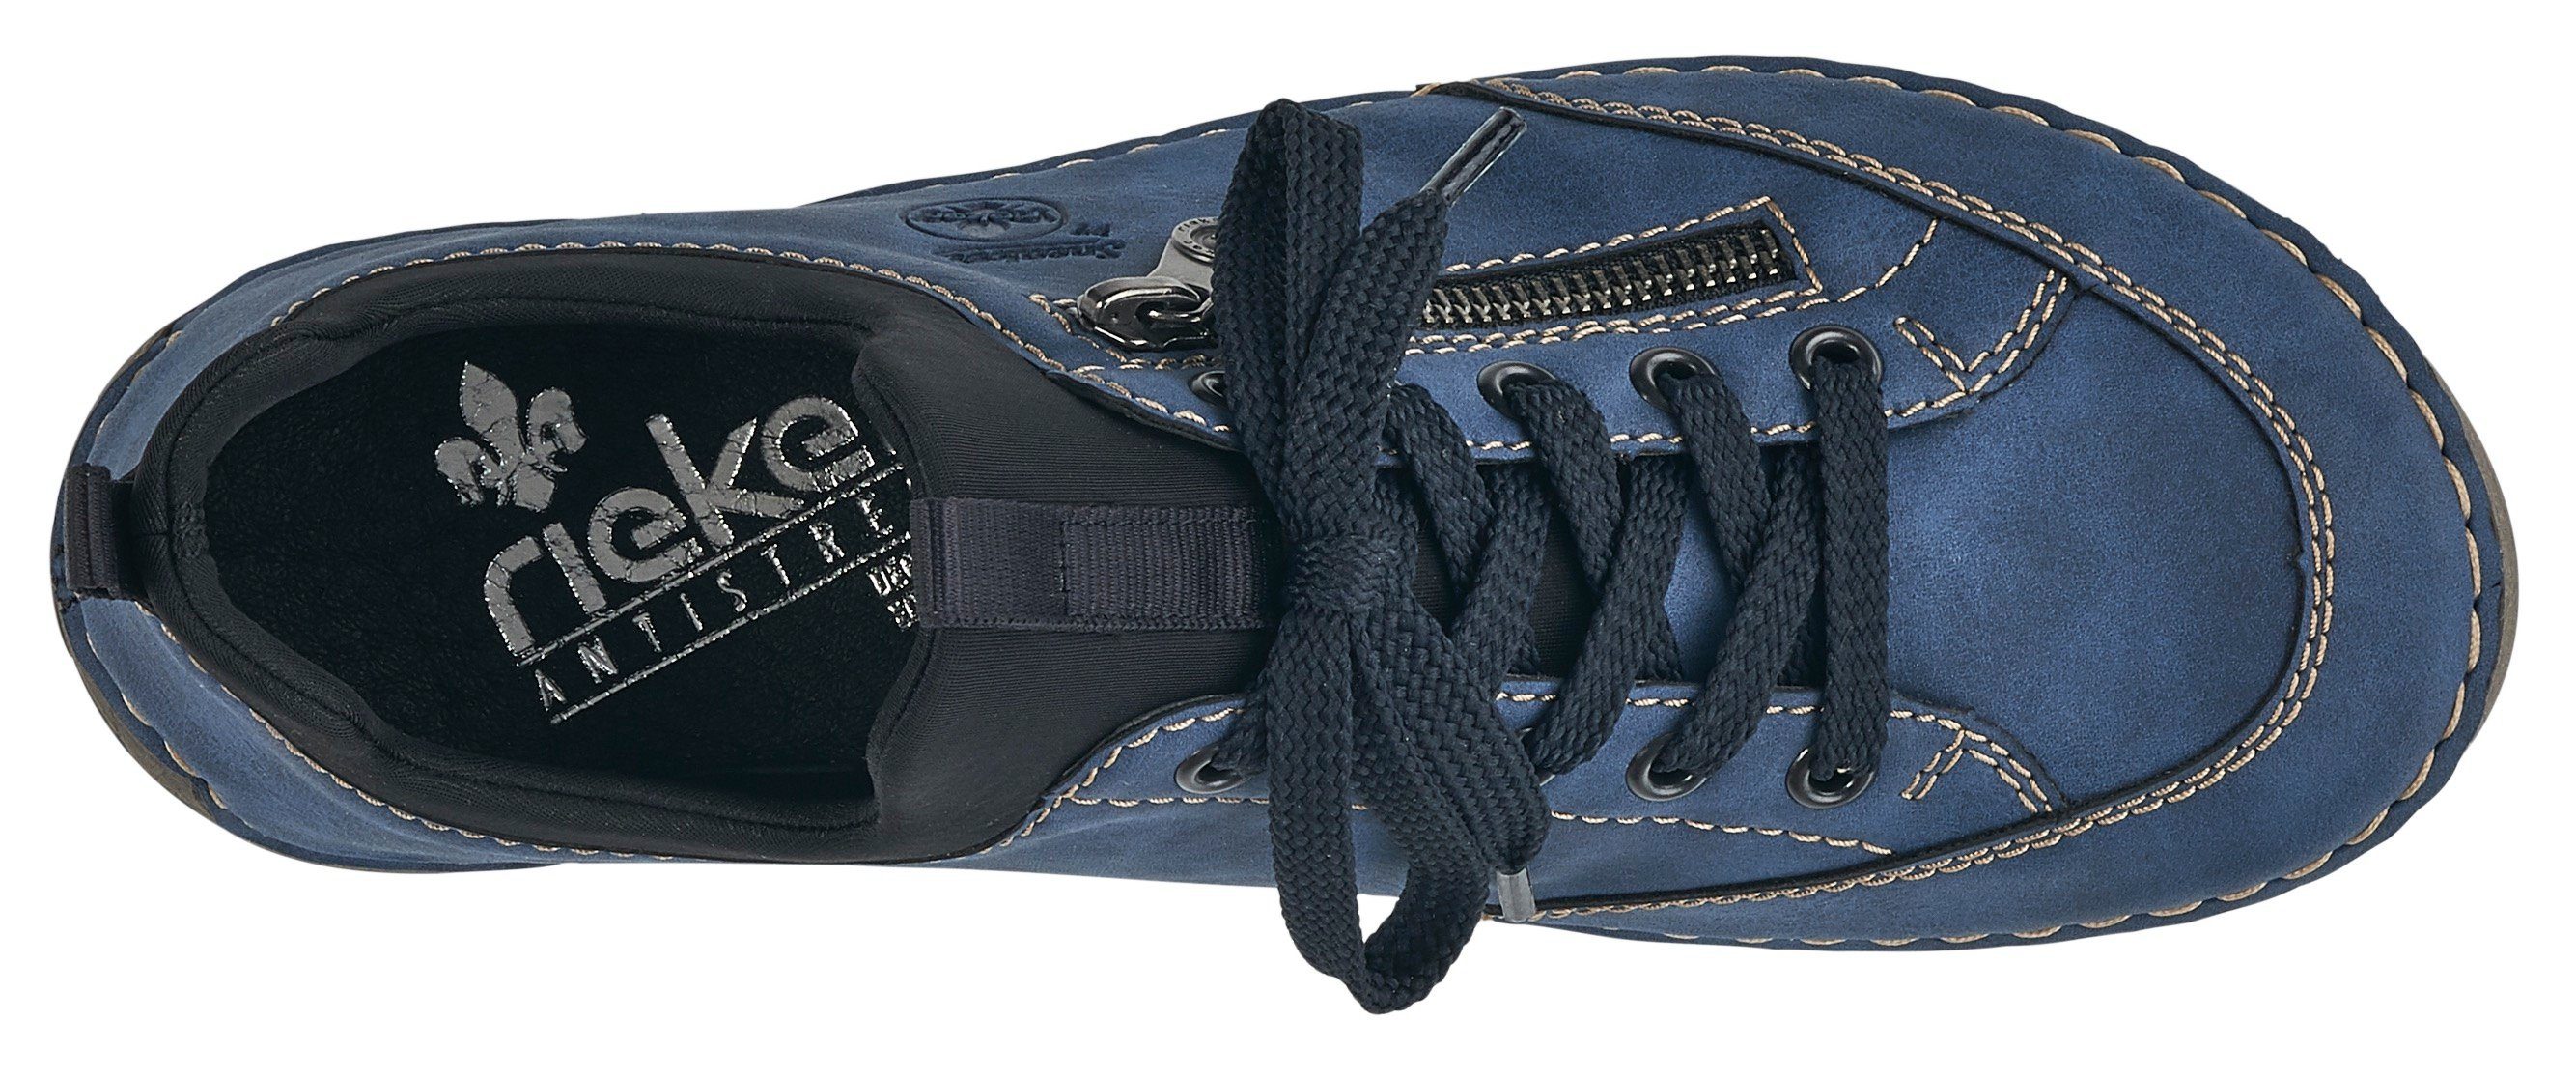 Rieker elastischem blau mit Einschlupf Sneaker Slip-On kombi (14)